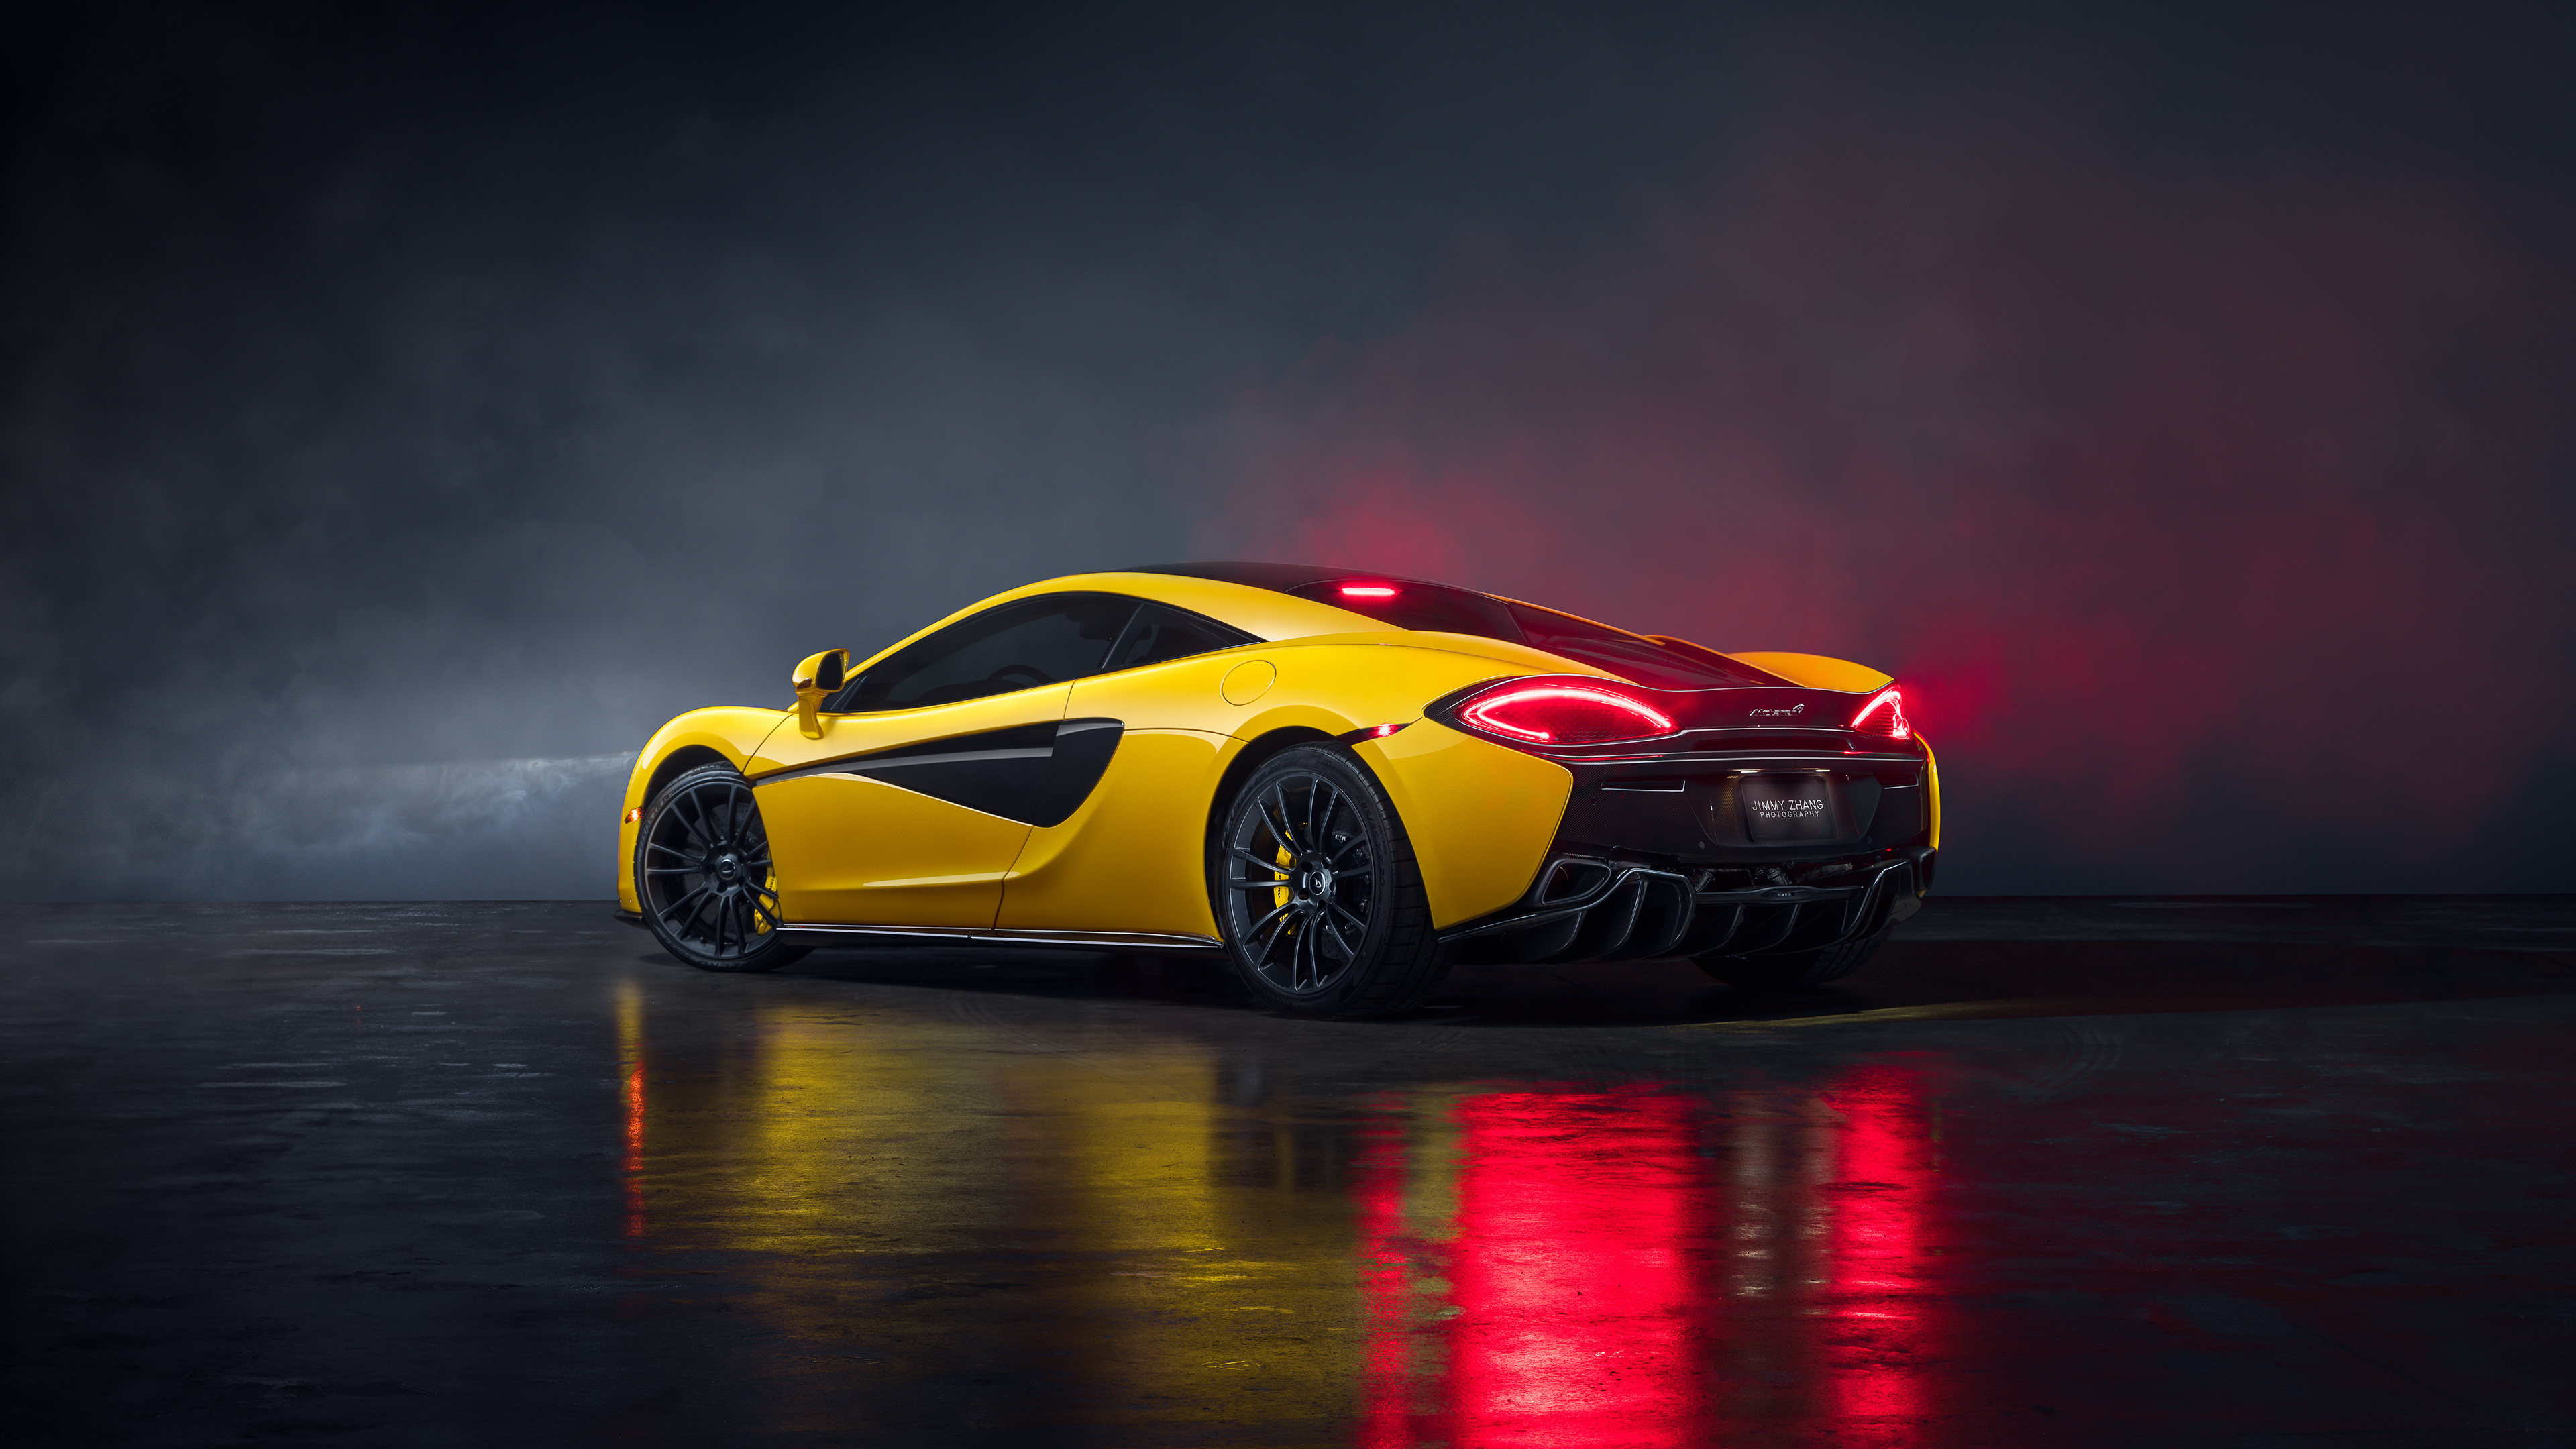 McLaren 570S, Sports car beauty, High-quality wallpaper, Stunning visuals, 3840x2160 4K Desktop